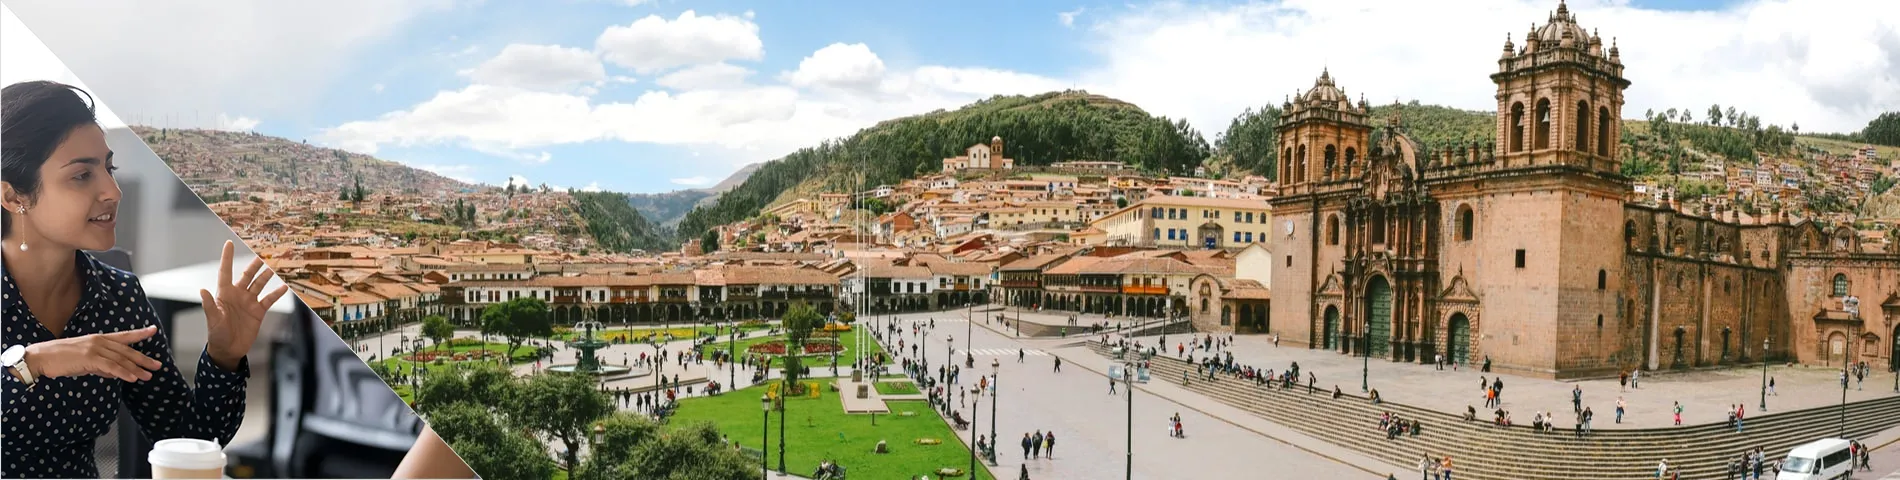 Cuzco - Samtale / Kommunikasjon